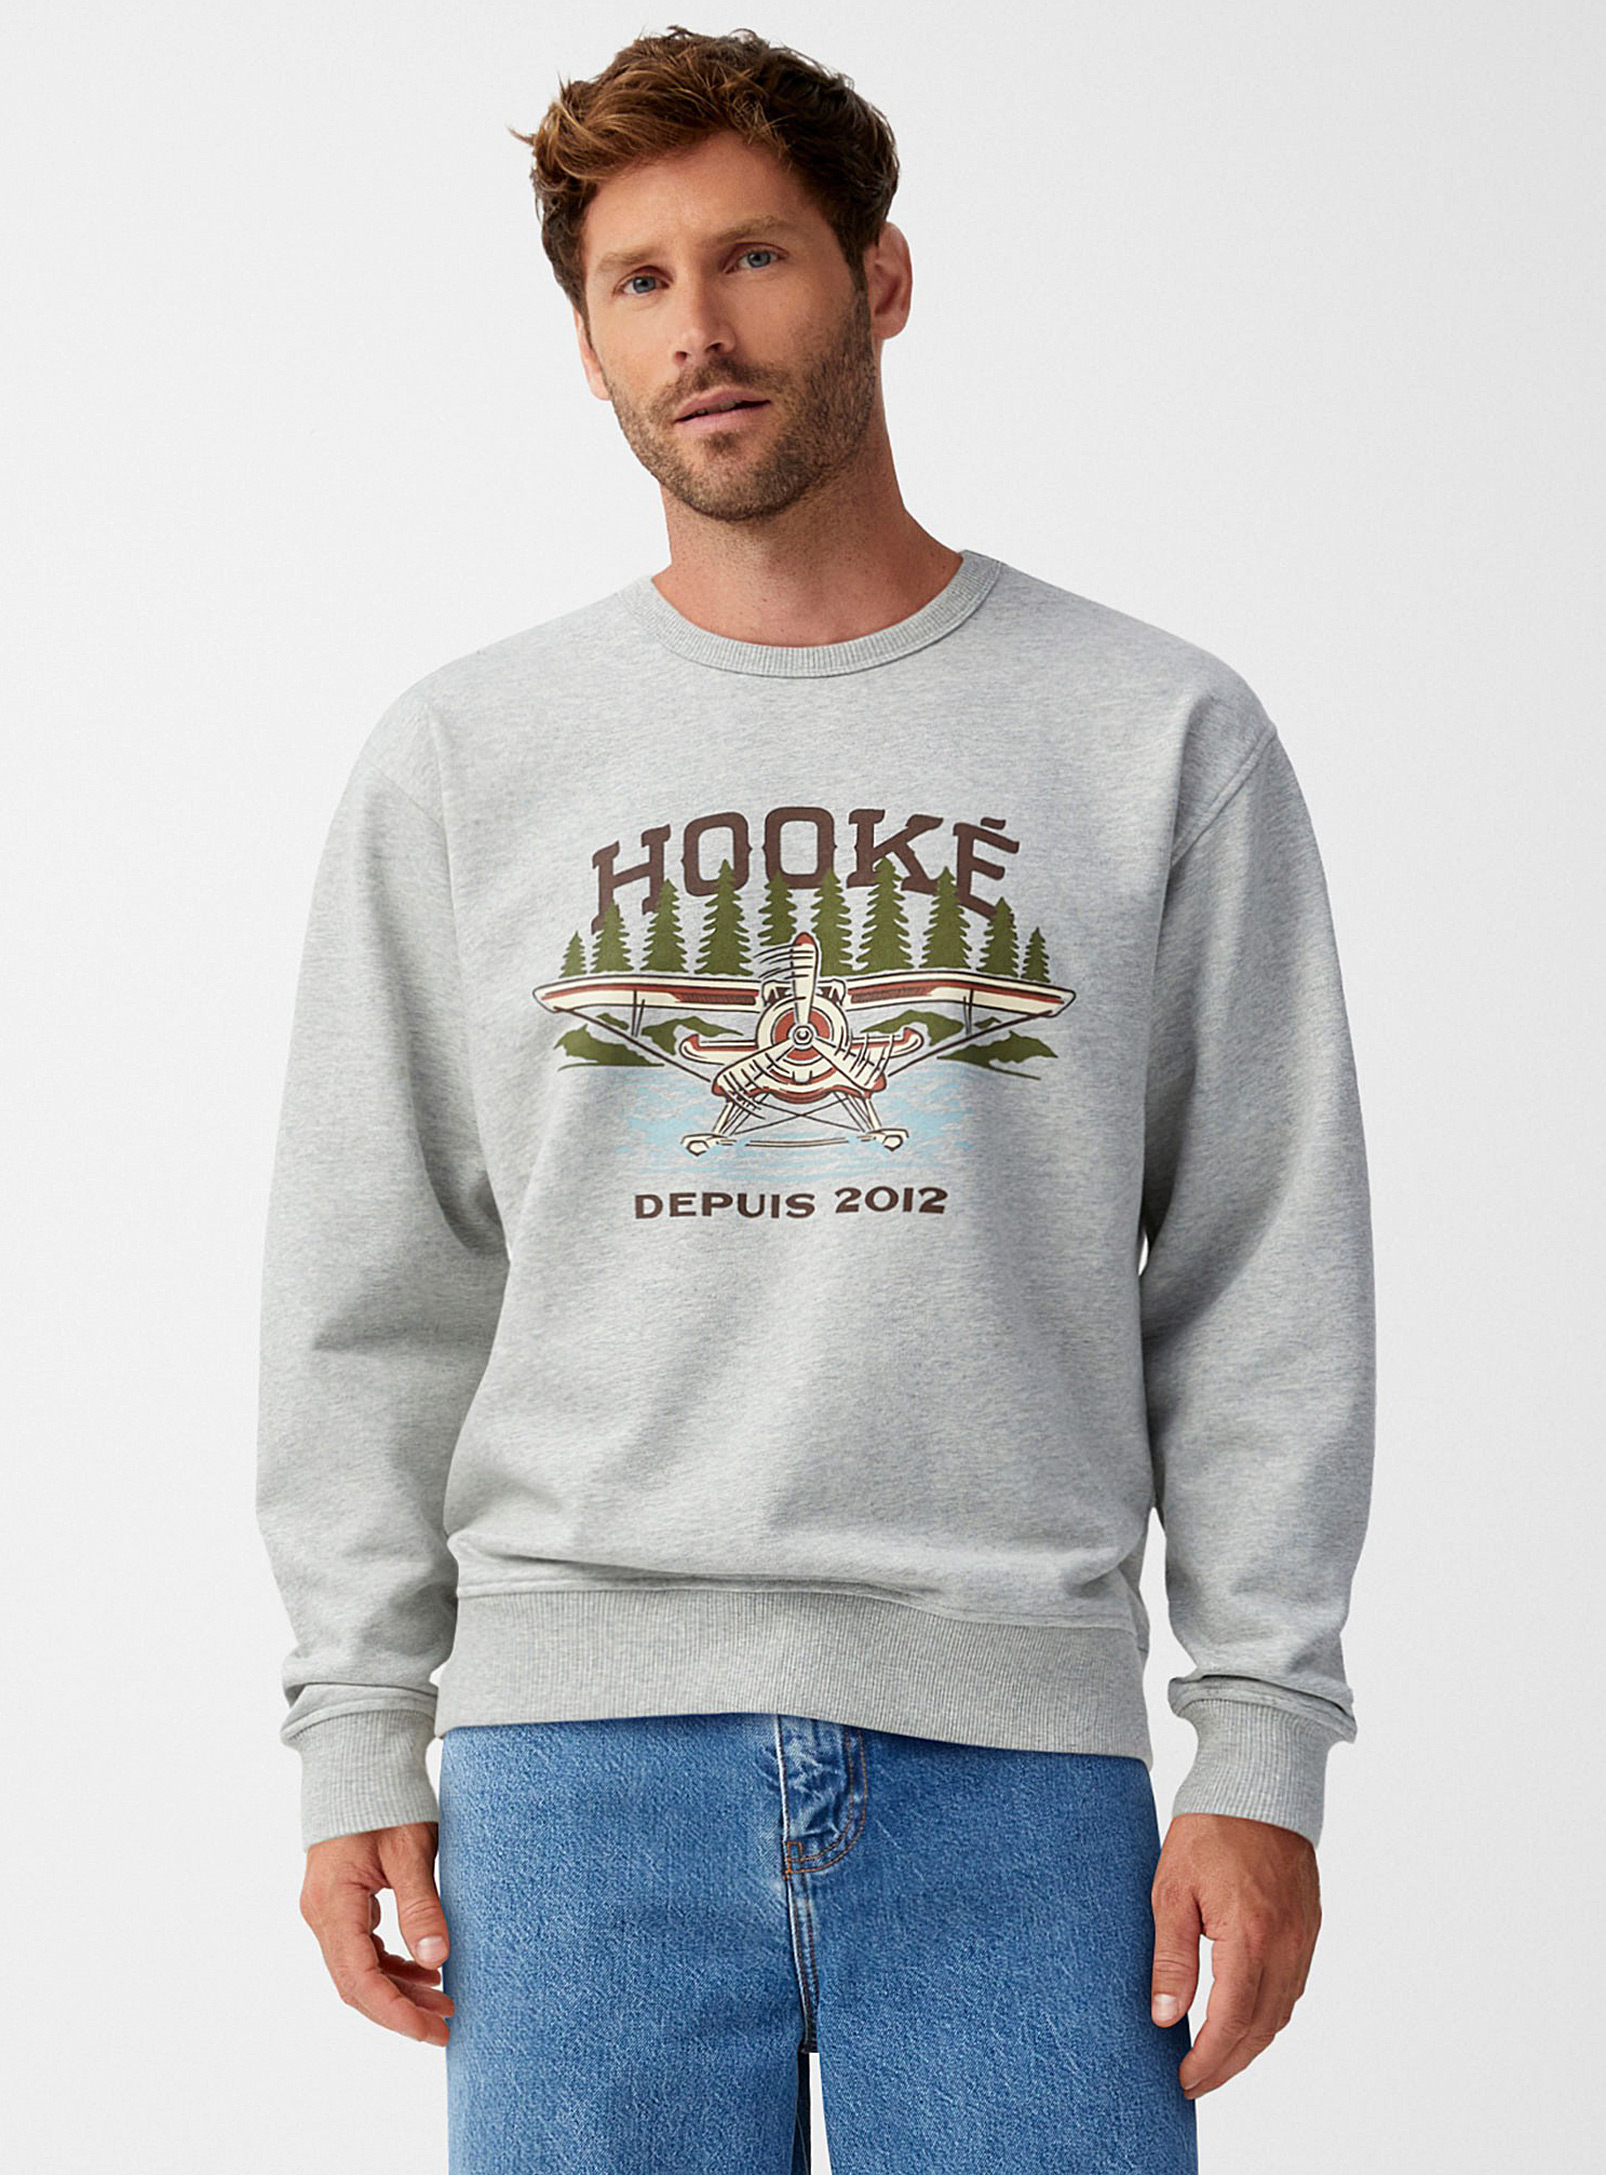 Hooké Seaplane Sweatshirt In Gray